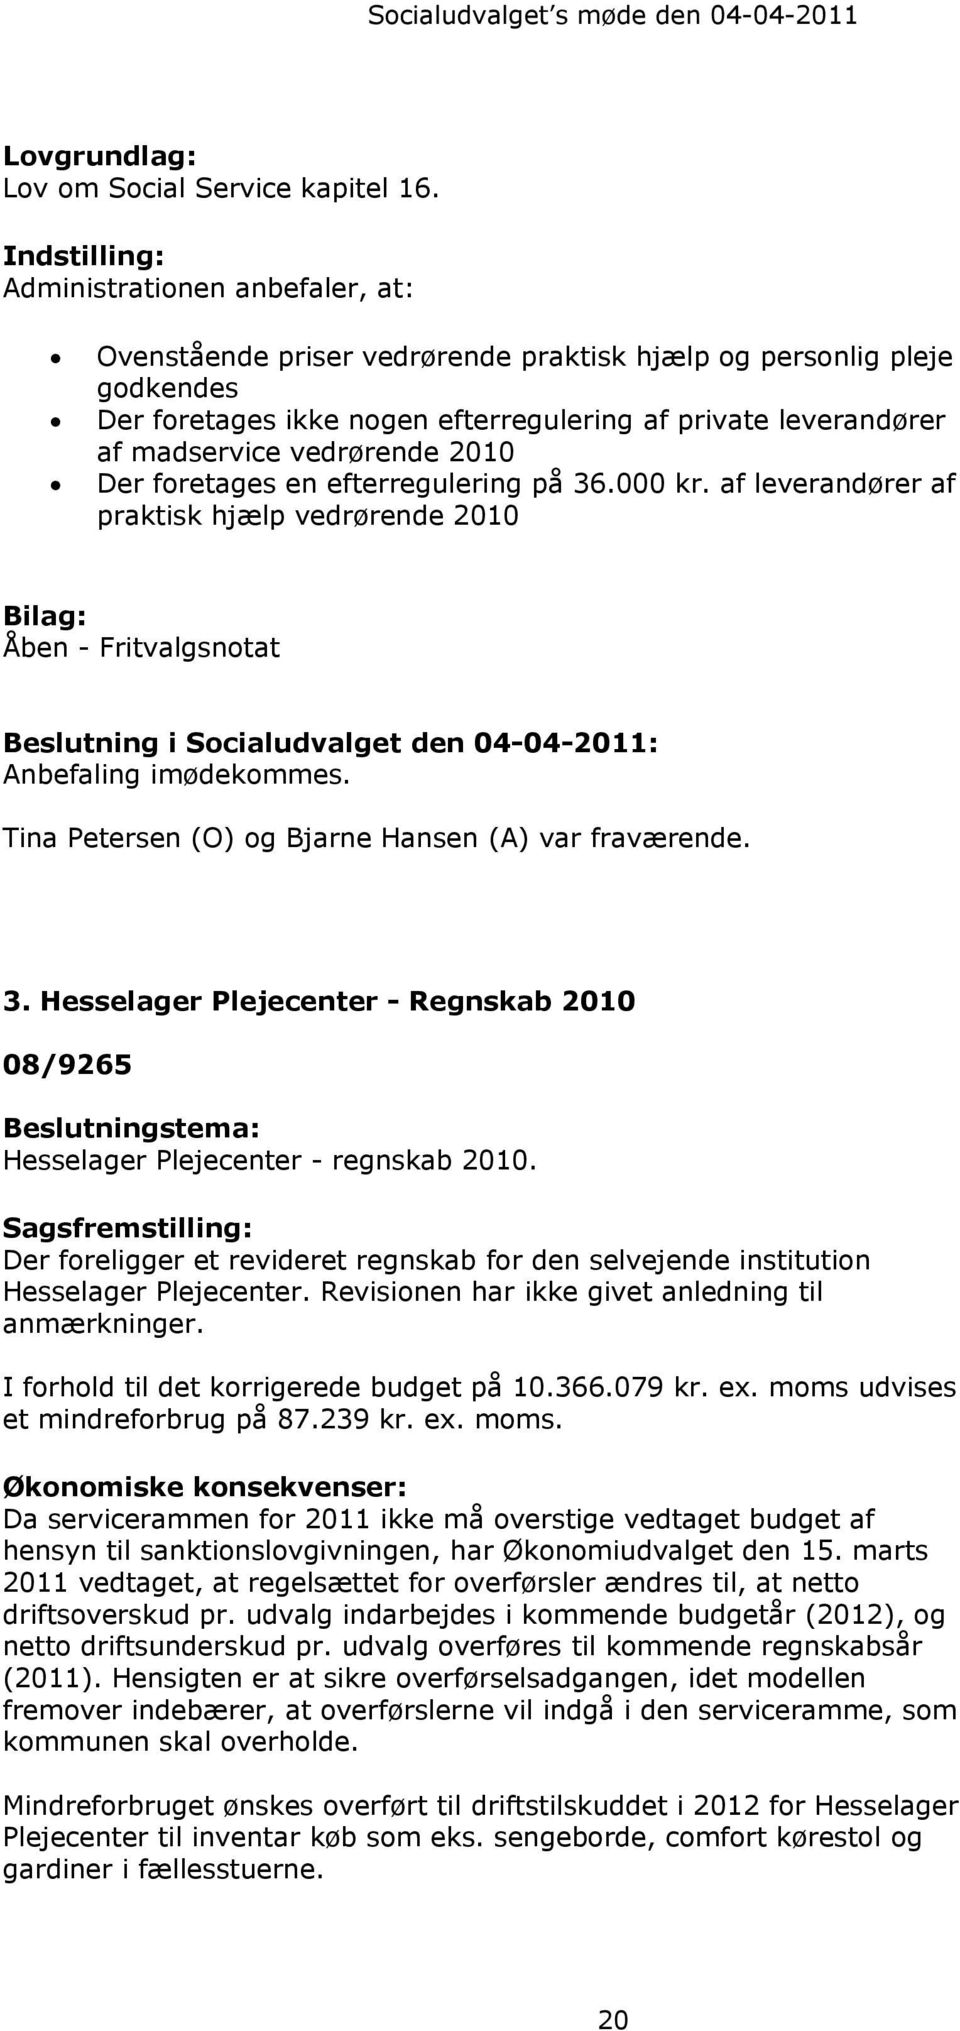 vedrørende 2010 Der foretages en efterregulering på 36.000 kr.